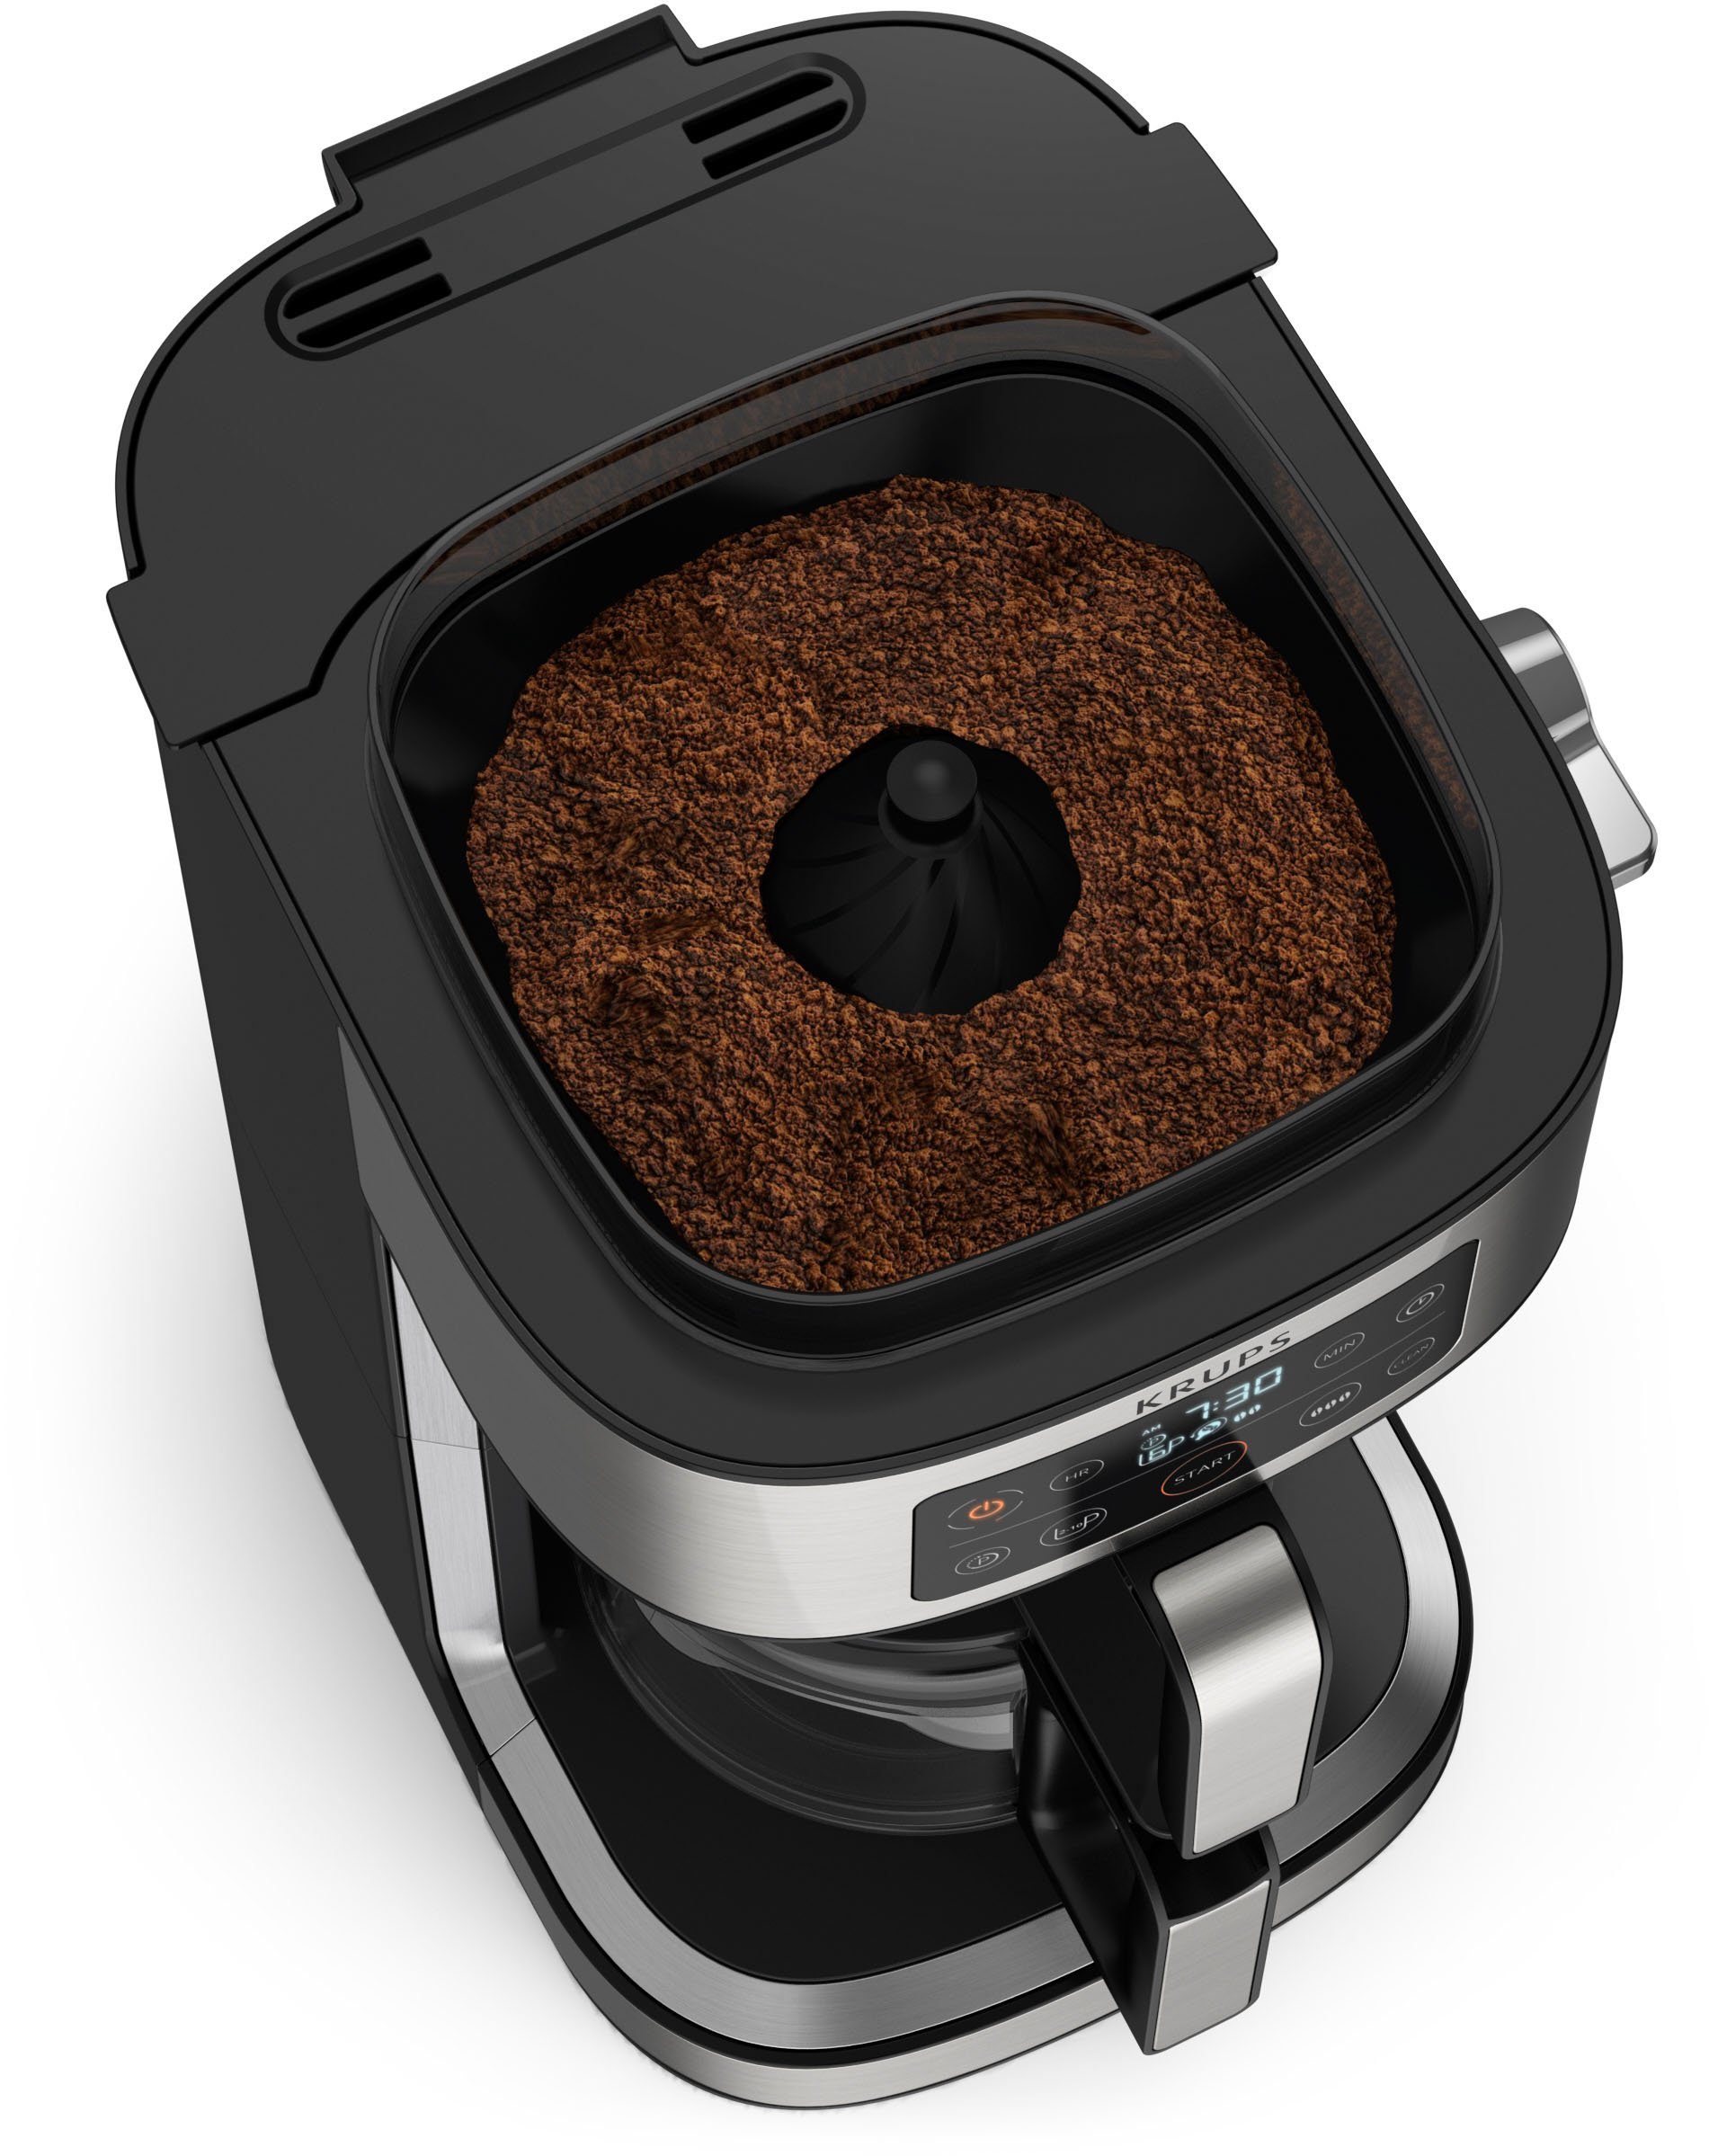 Filterkaffeemaschine Kaffeekanne, 400 für Partner, integrierte Kaffee zu frischen g 1,25l Krups bis Kaffee-Vorratsbox Aroma KM760D